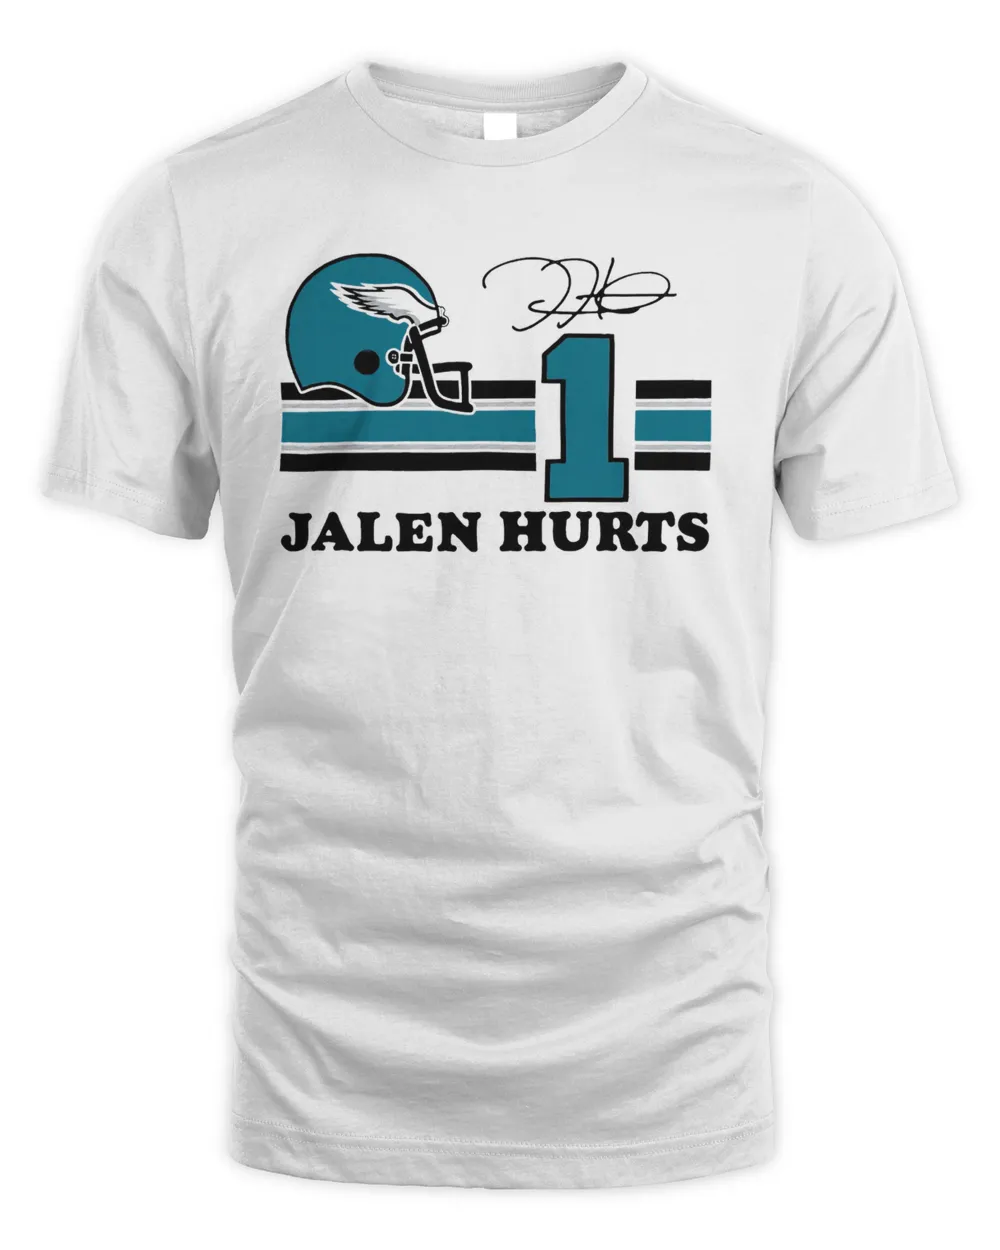 Eagles Jalen Hurts #1 signature shirt